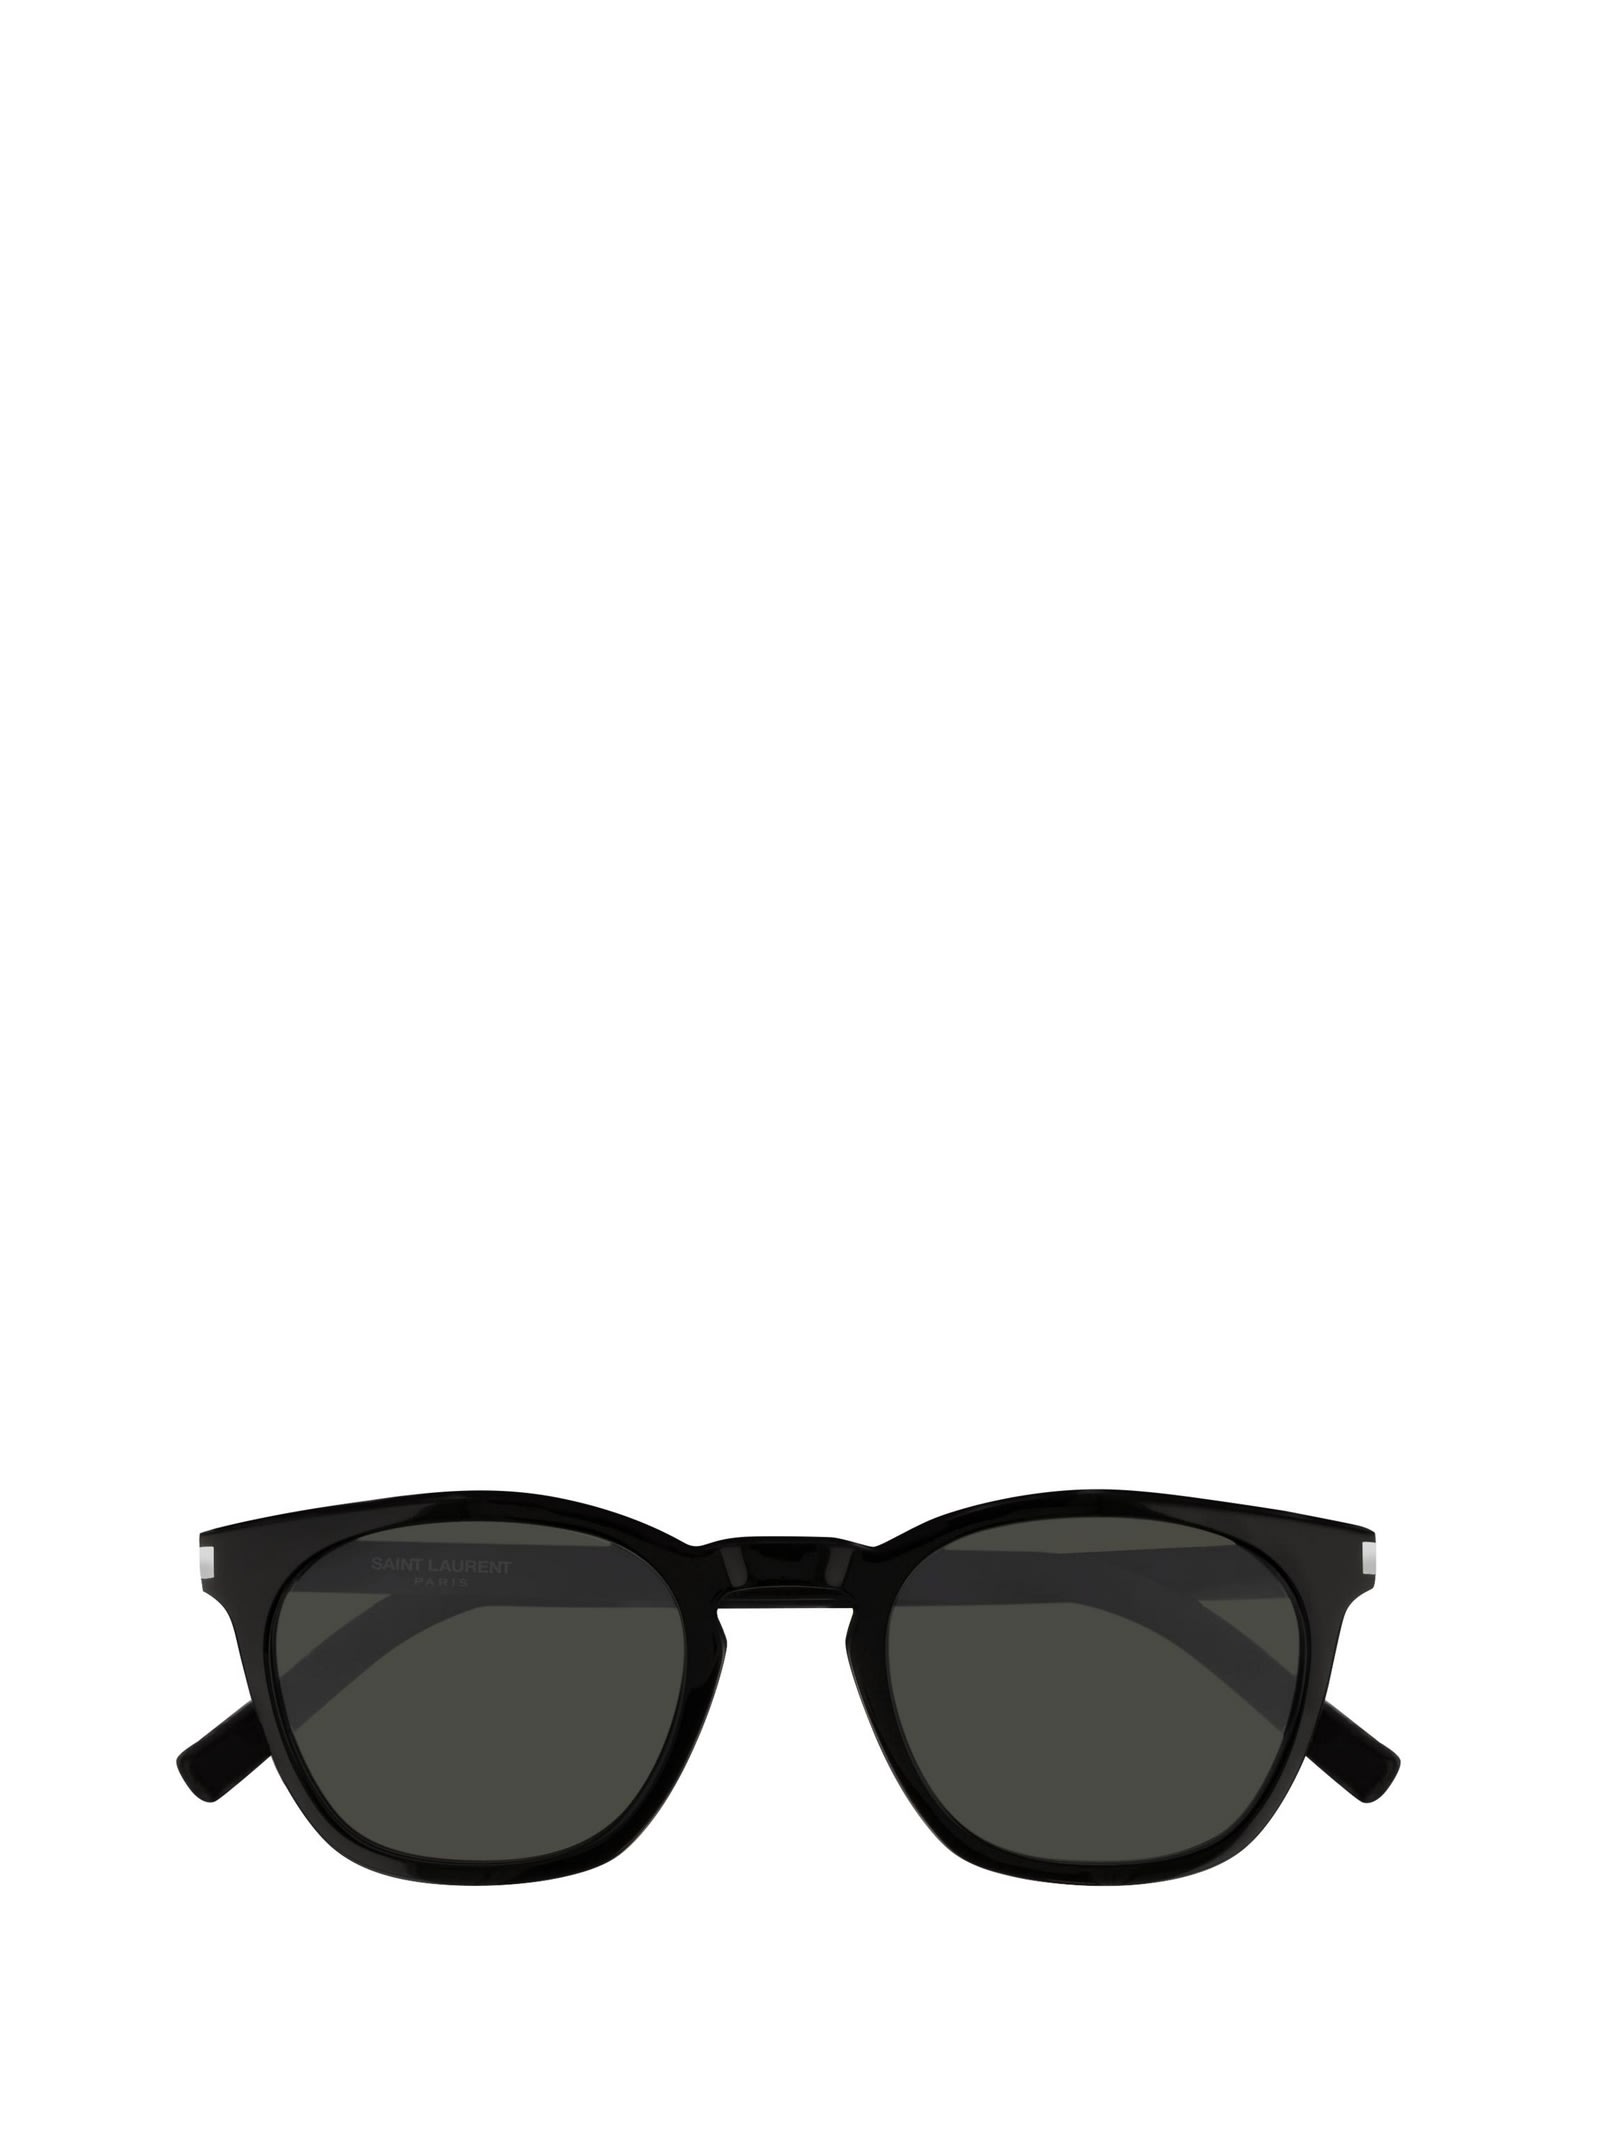 Saint Laurent Eyewear Saint Laurent Sl 28 Black Sunglasses